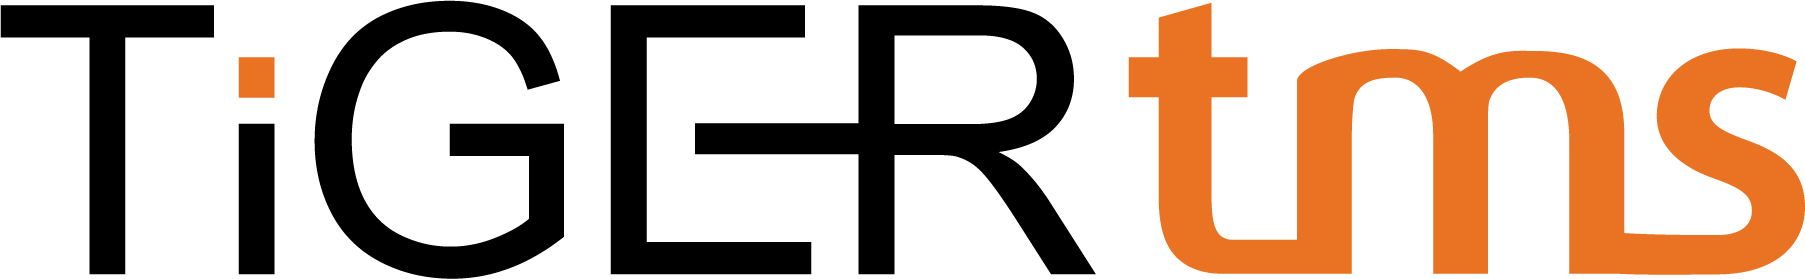 tigertms-logo transparent